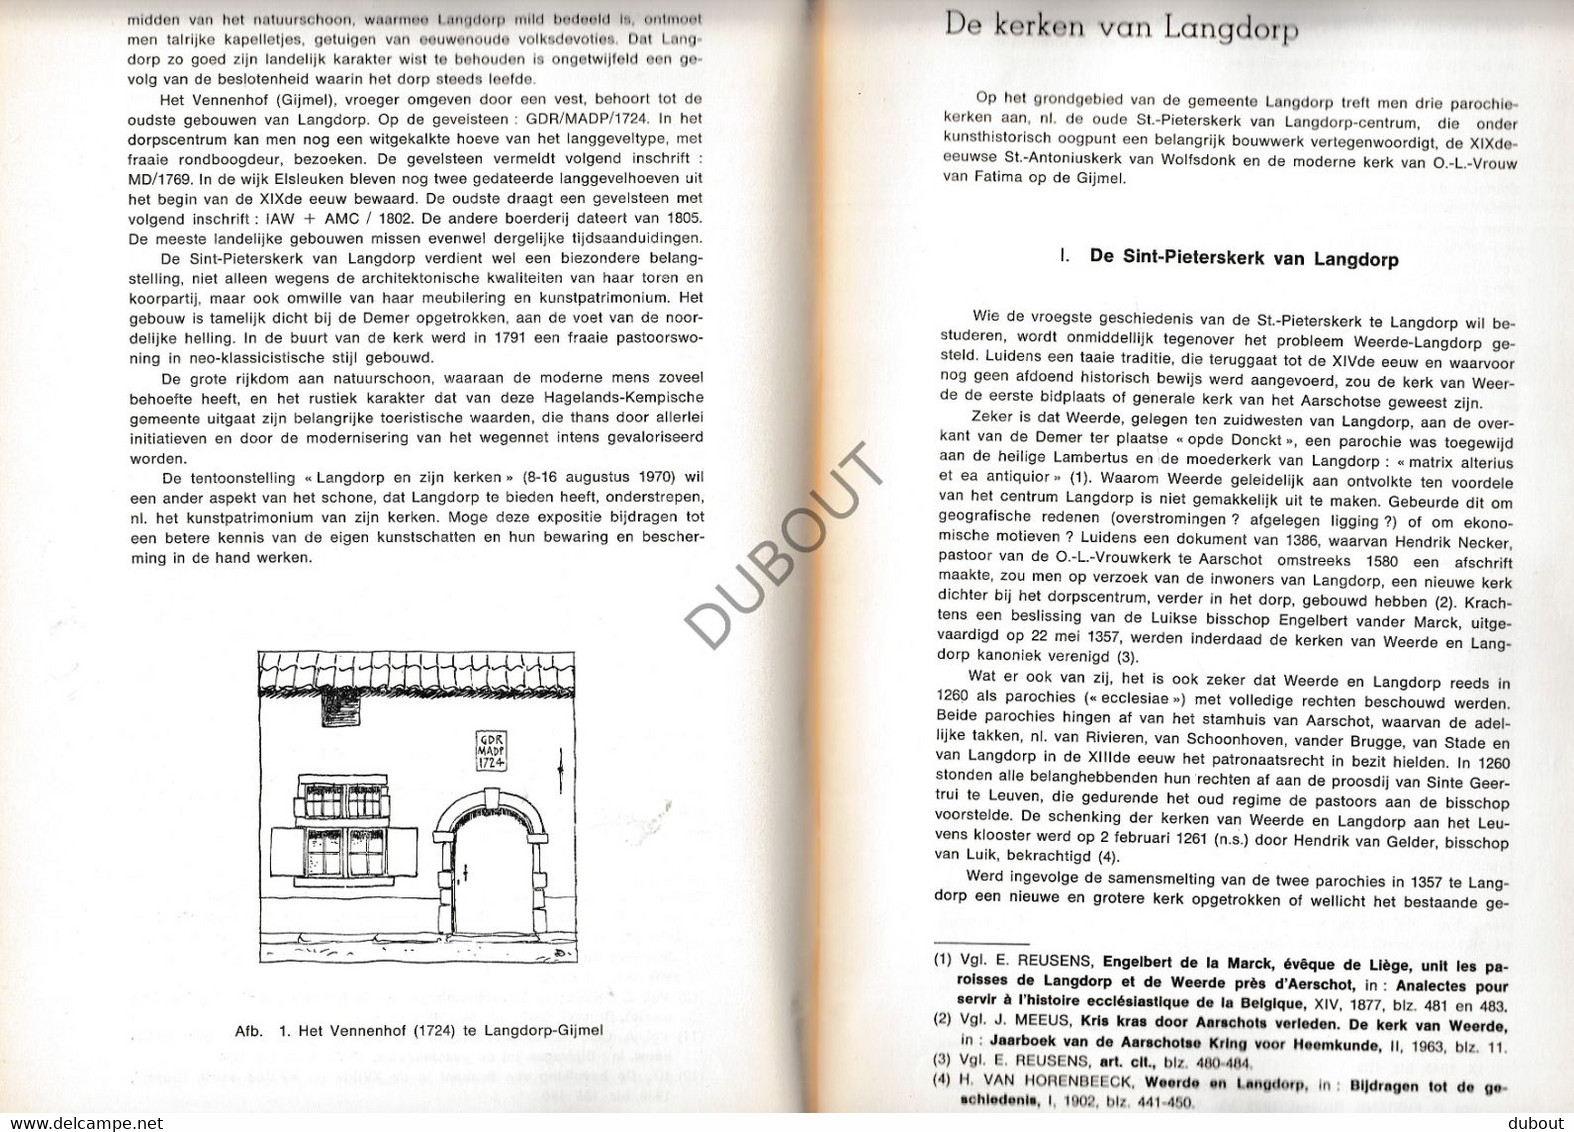 Langdorp/Aarschot - Langdorp En Zijn Kerken - J. Gerits - 1970 - Tentoonstelling Kataloog Met Illustraties (V1906) - Anciens